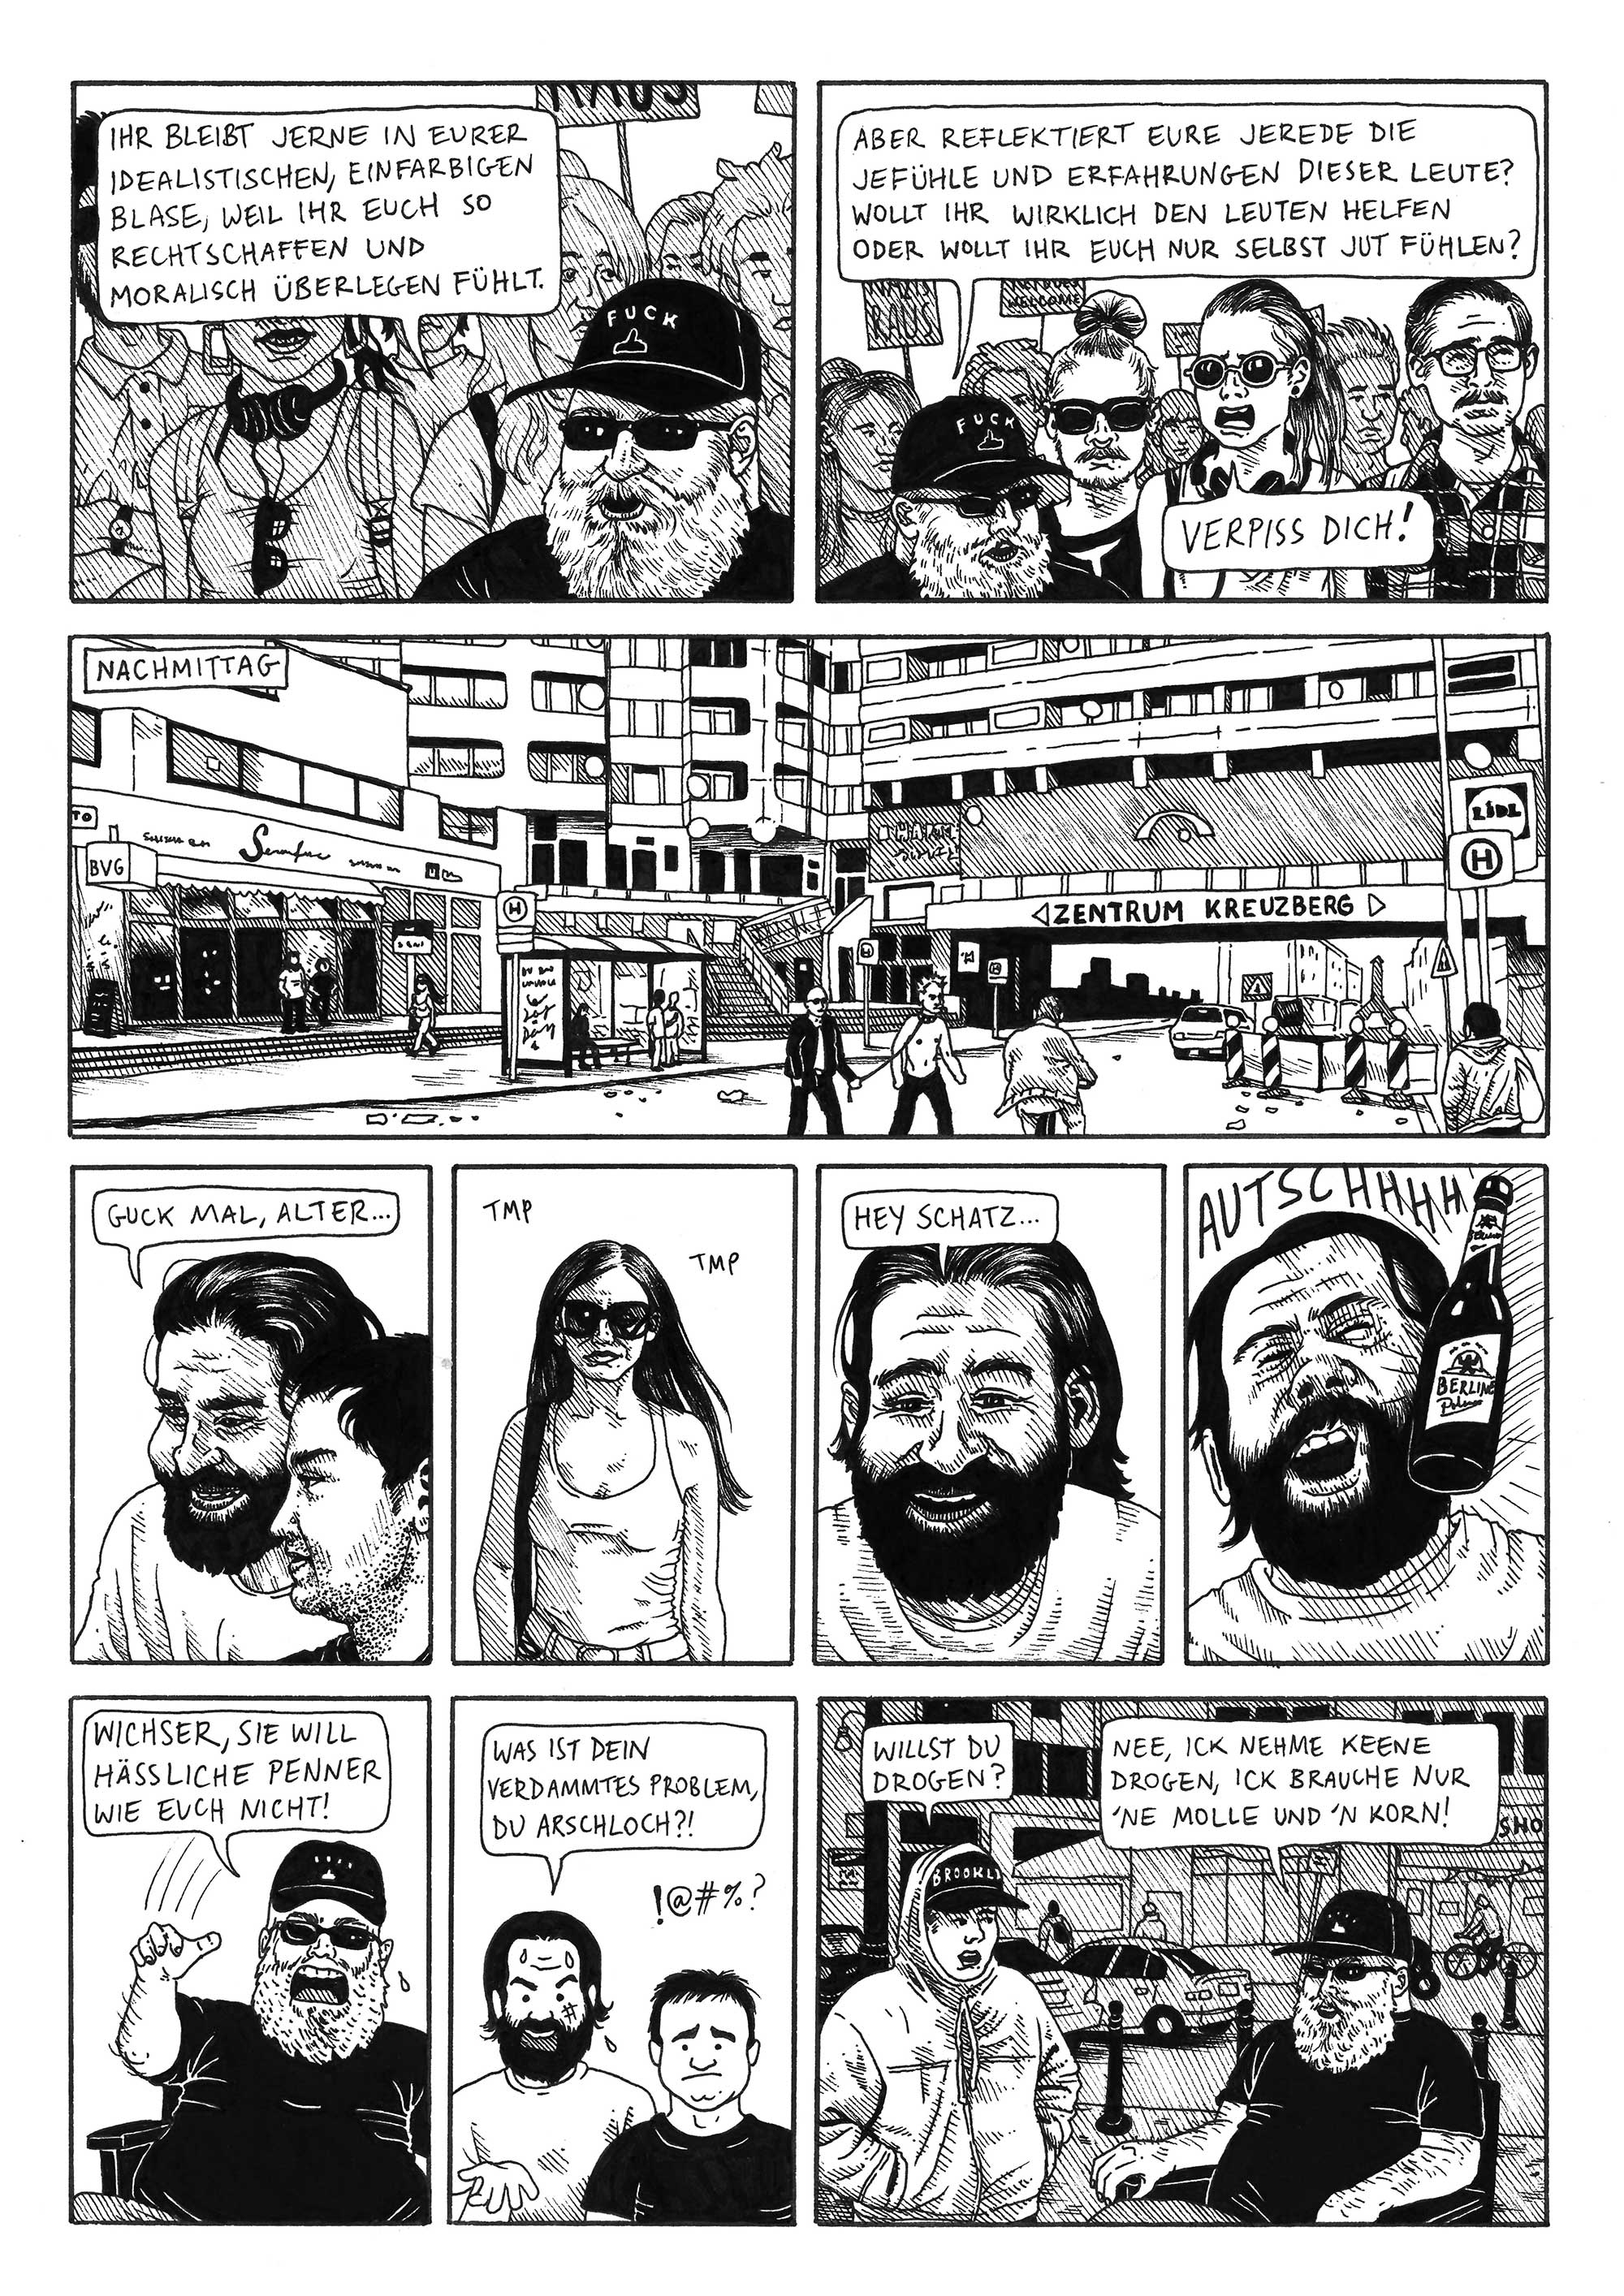 Ariel Cotton Drawing Berlin Deutschland zine comics Halt's Maul Zeichnung